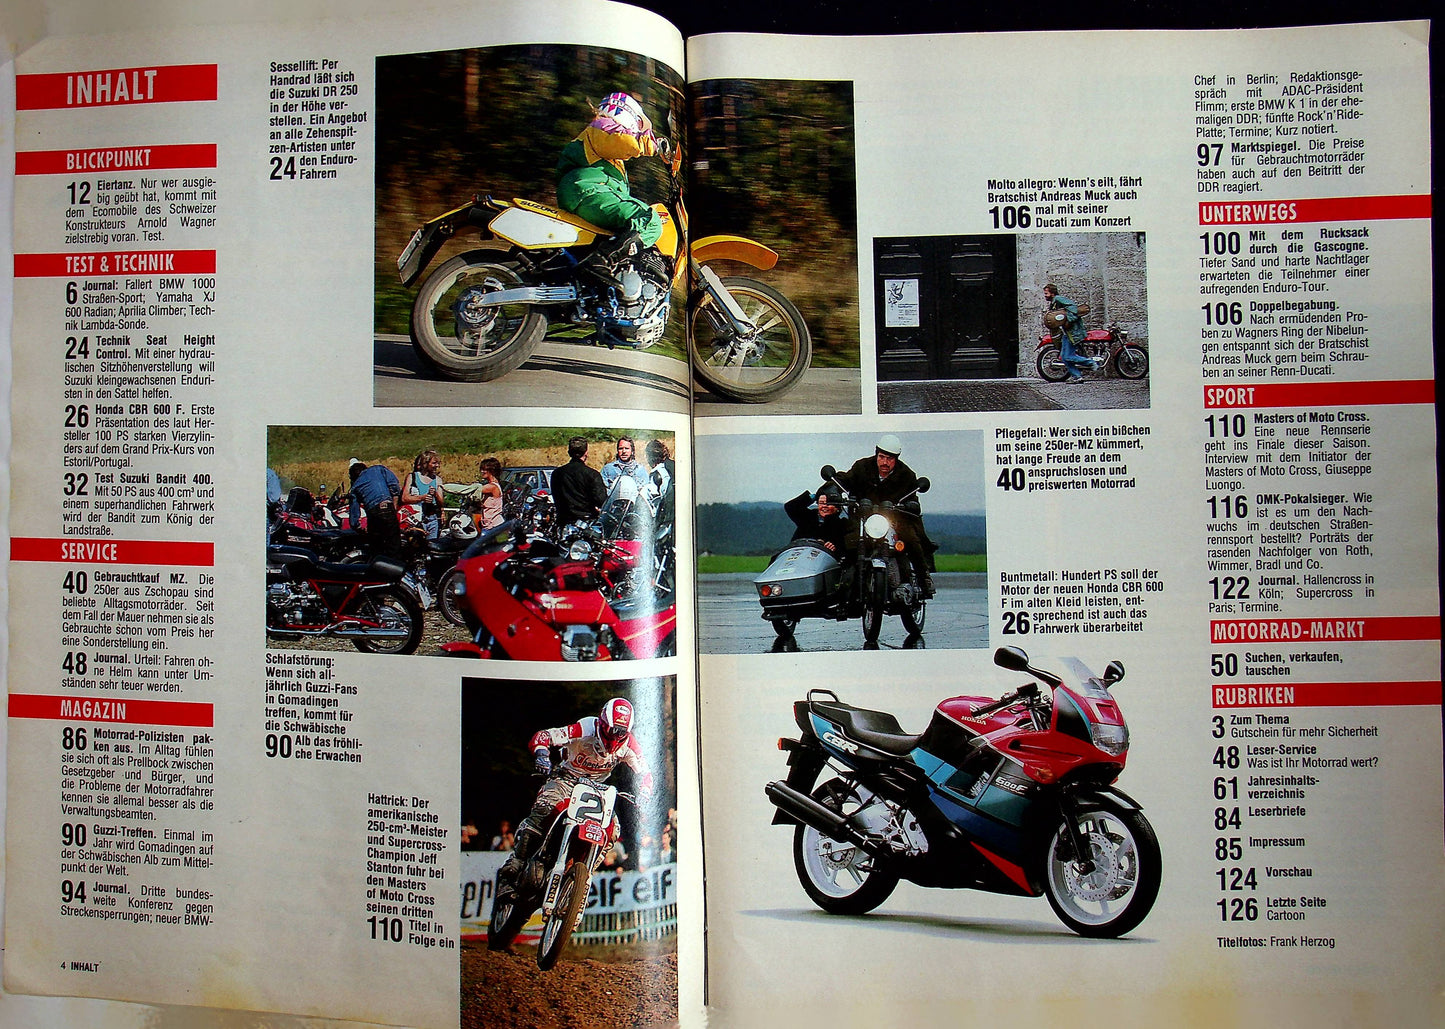 Motorrad 26/1990